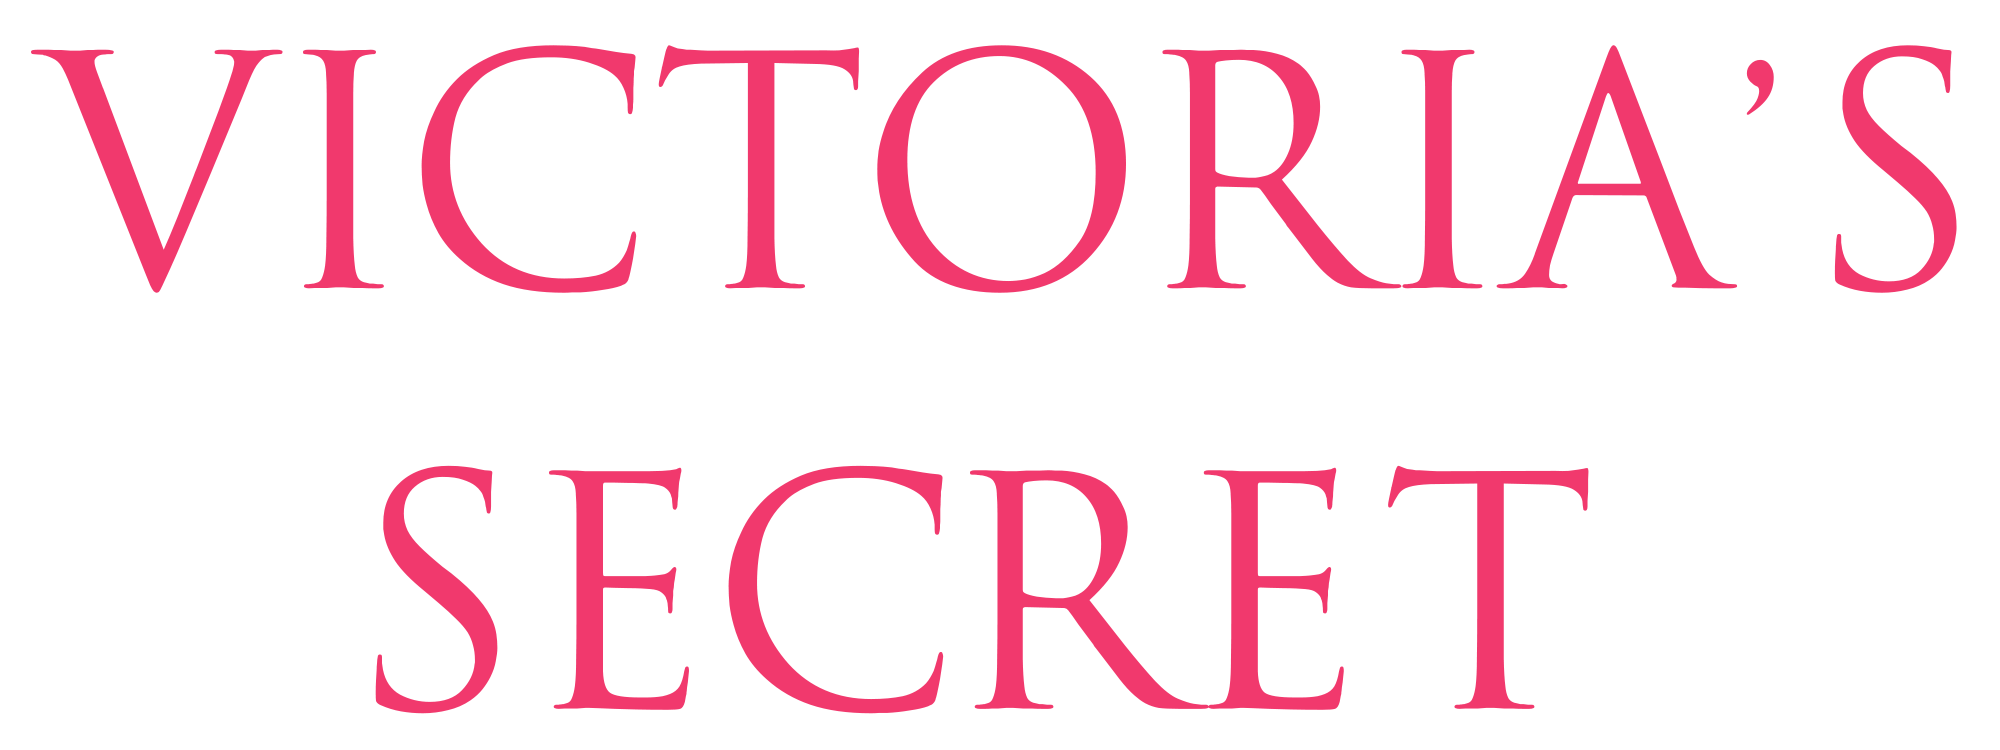 Victoria Secret Logo - File:Victoria's Secret.svg - Wikimedia Commons